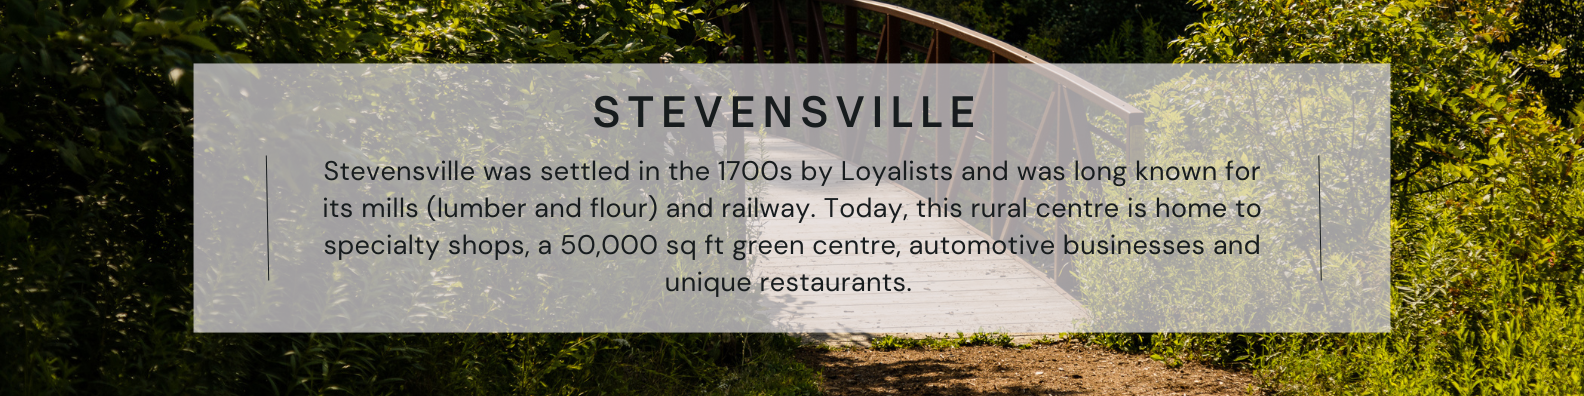 stevensville district description